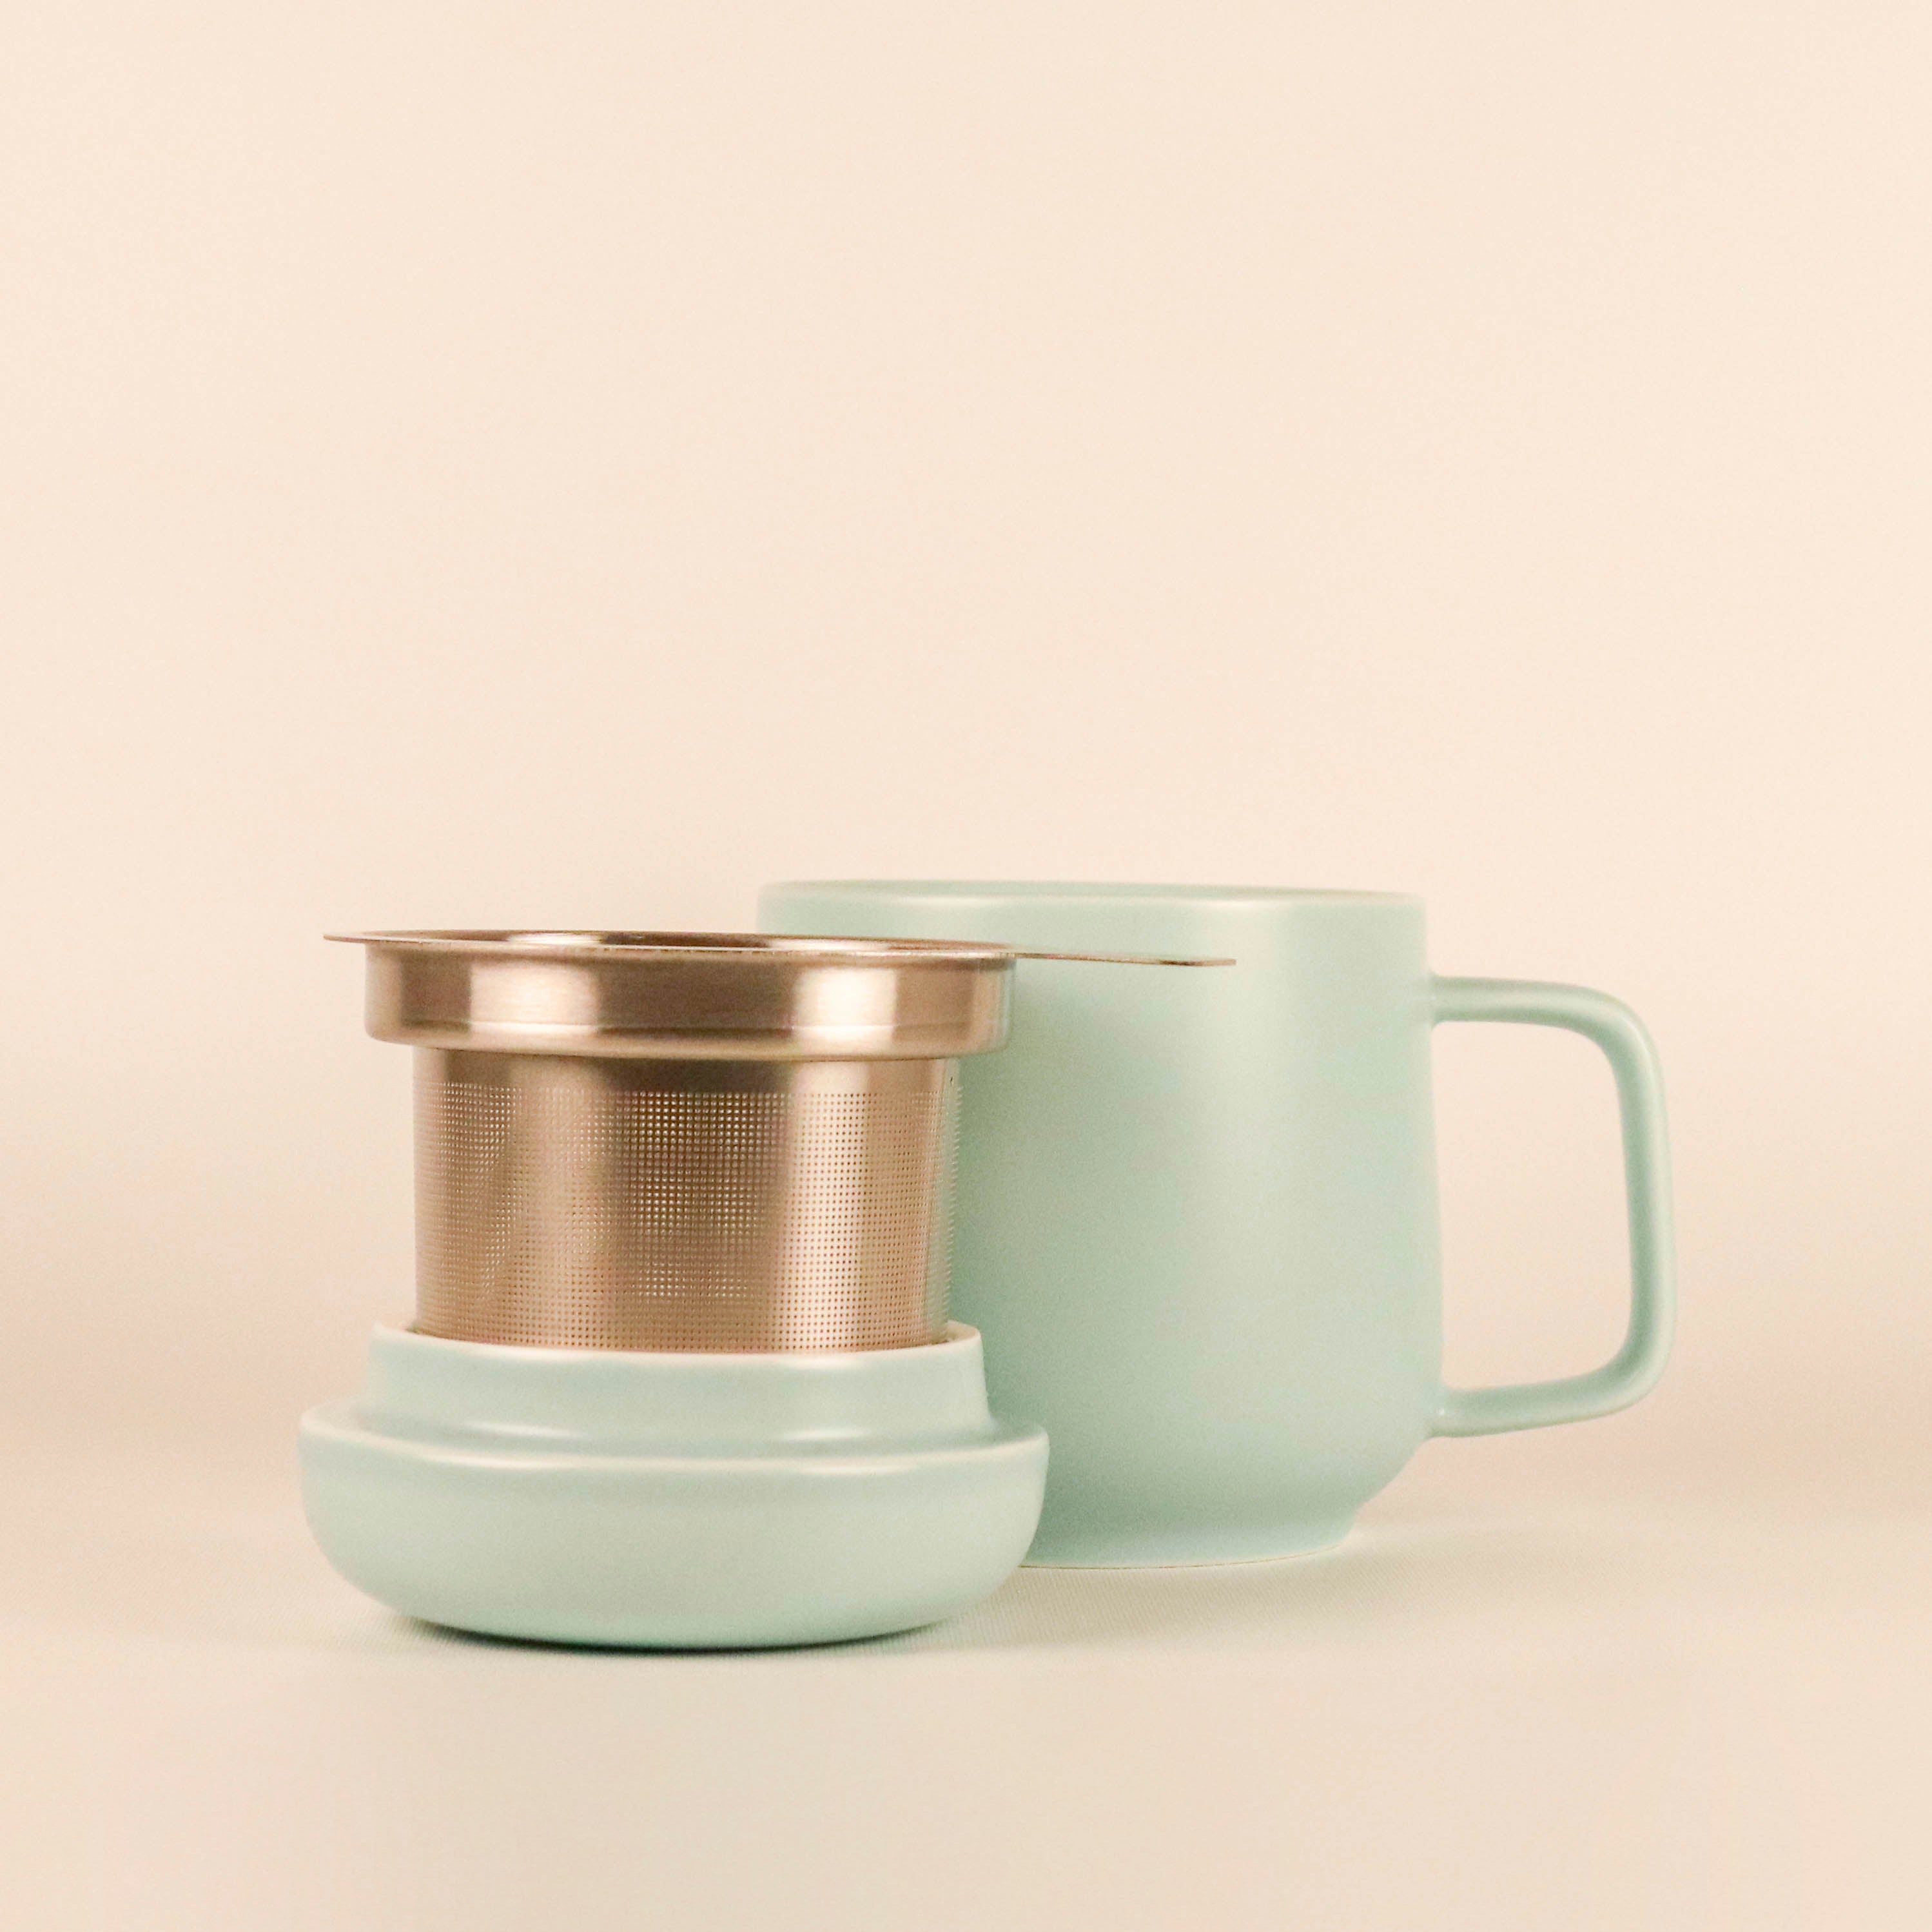 SUMO Ceramic Mug with Infuser